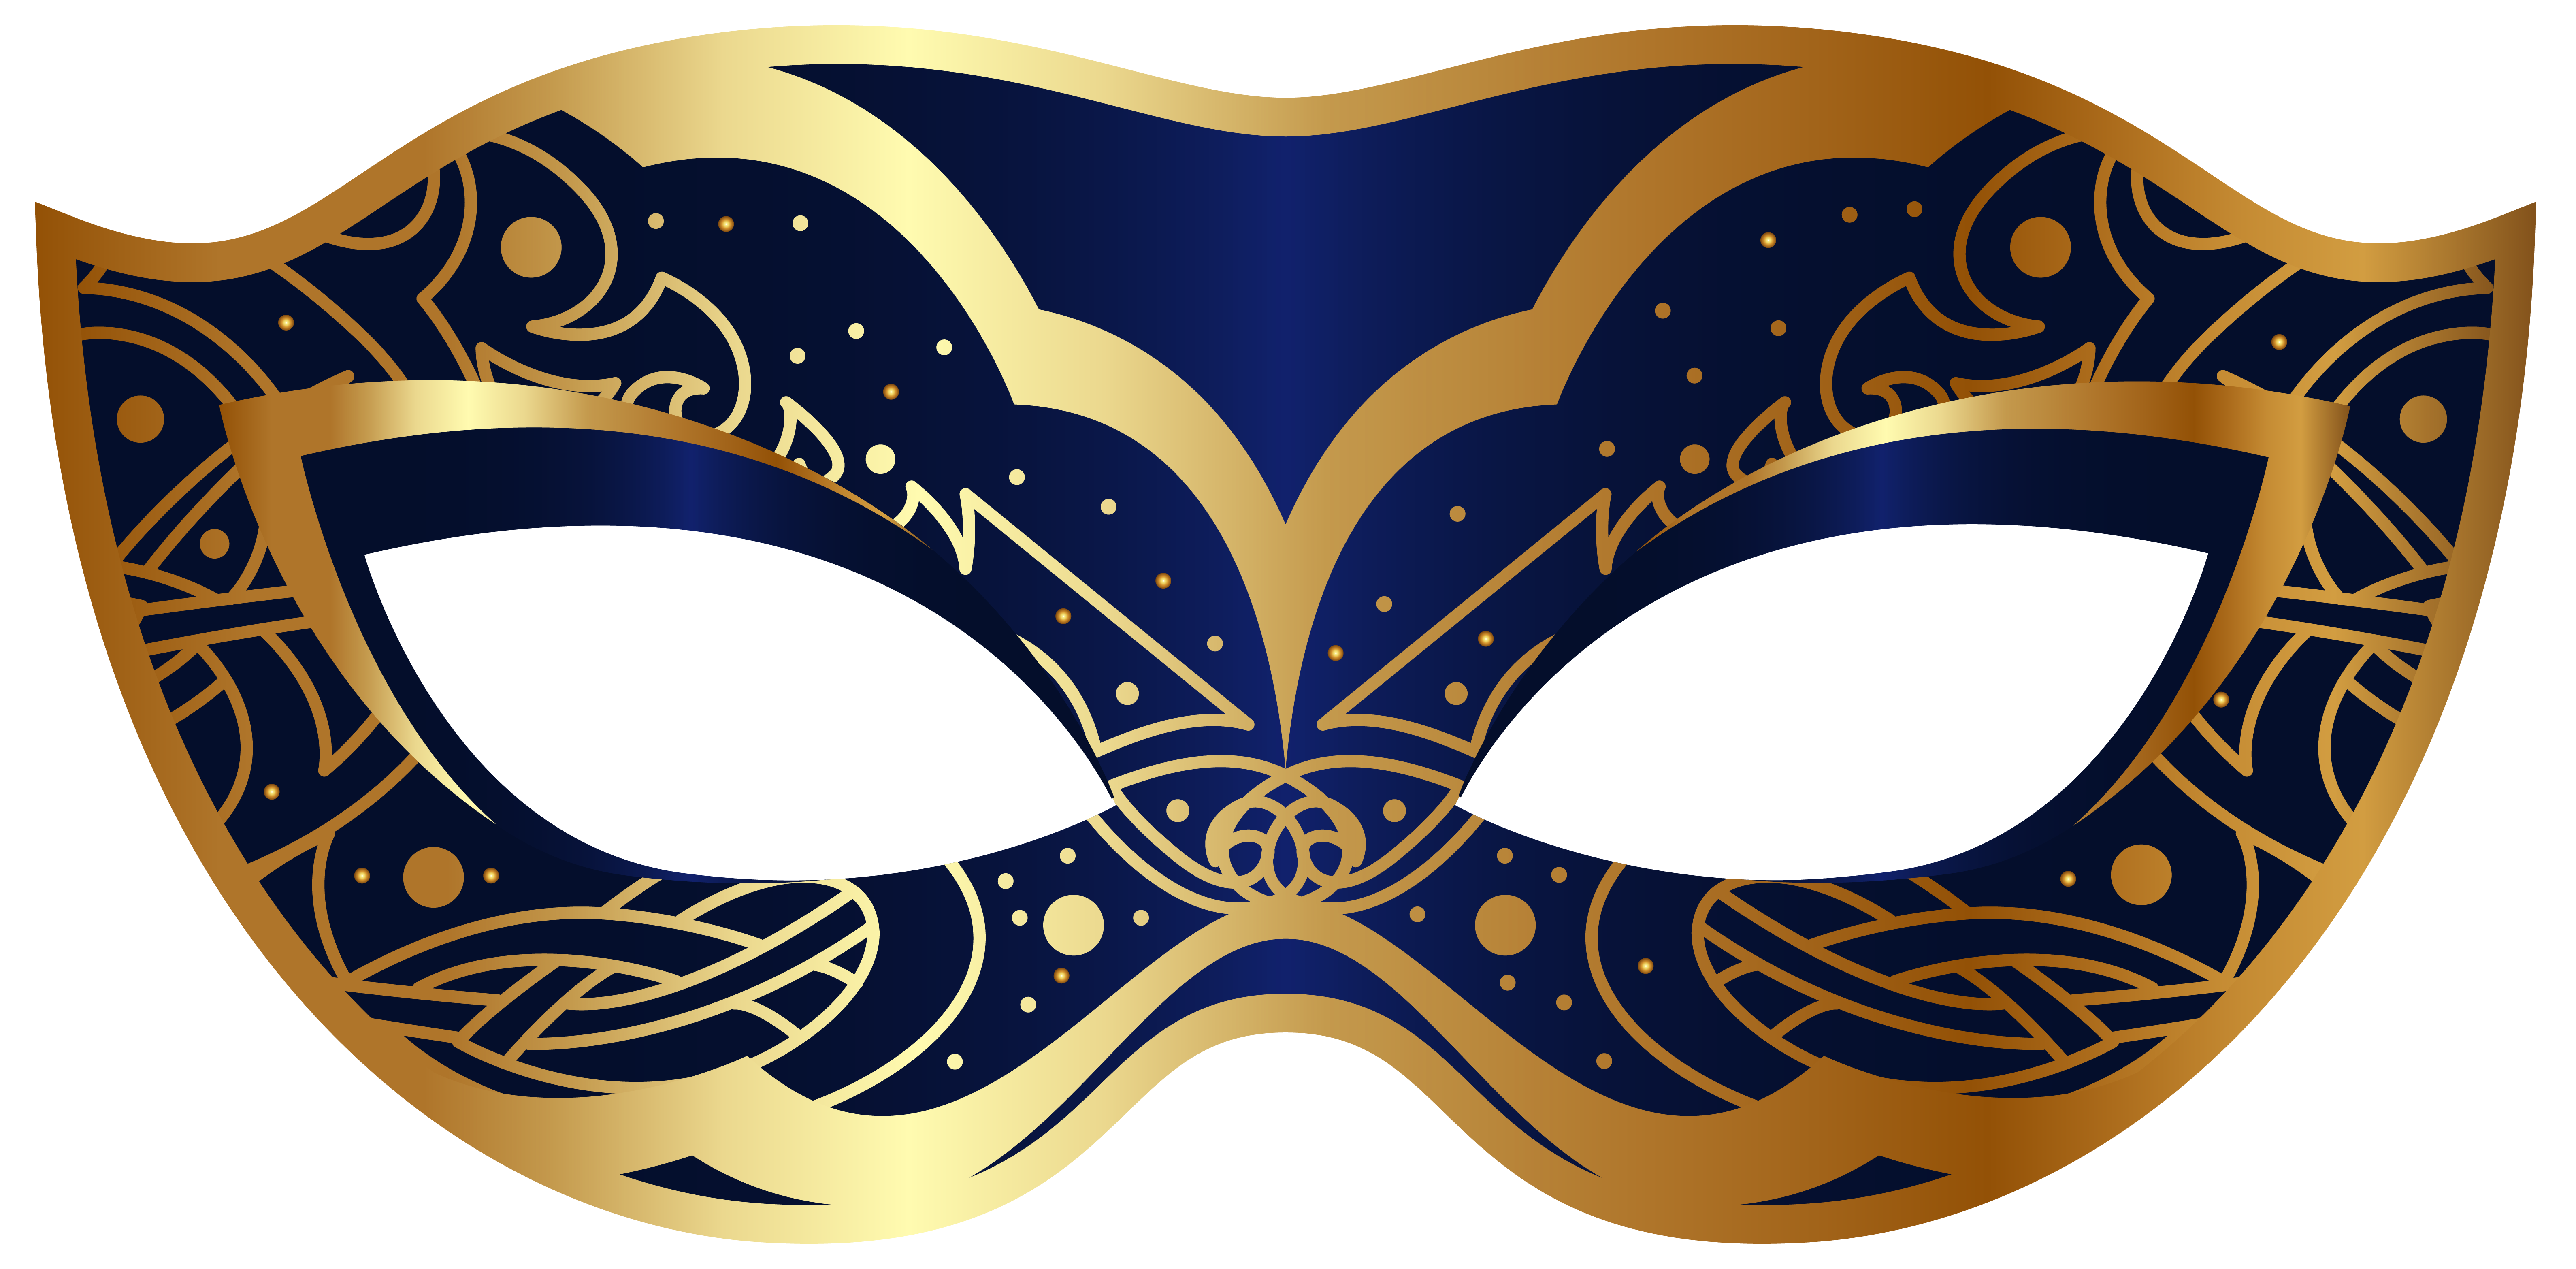 Mask clipart masquerade ball mask, Mask masquerade ball mask